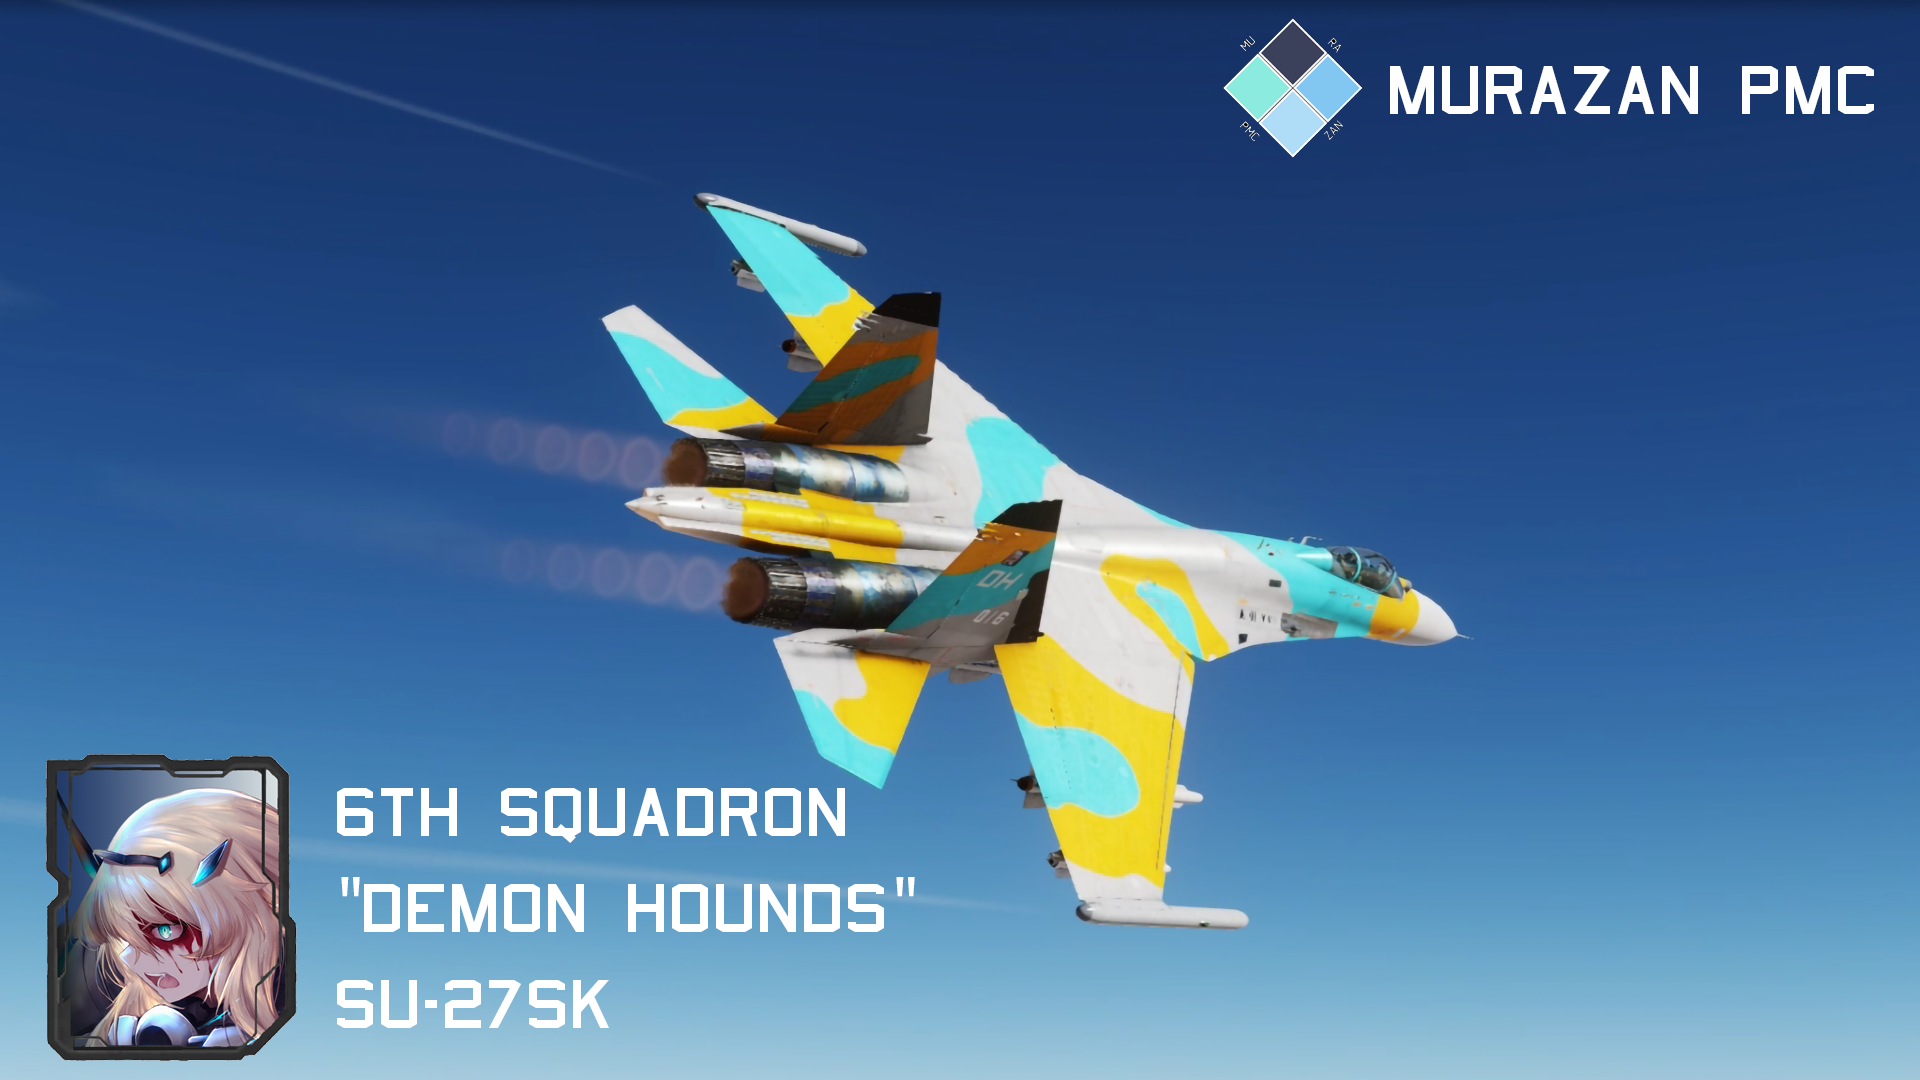 Su-27SK Murazan PMC 6th Squadron "Demon Hounds" 